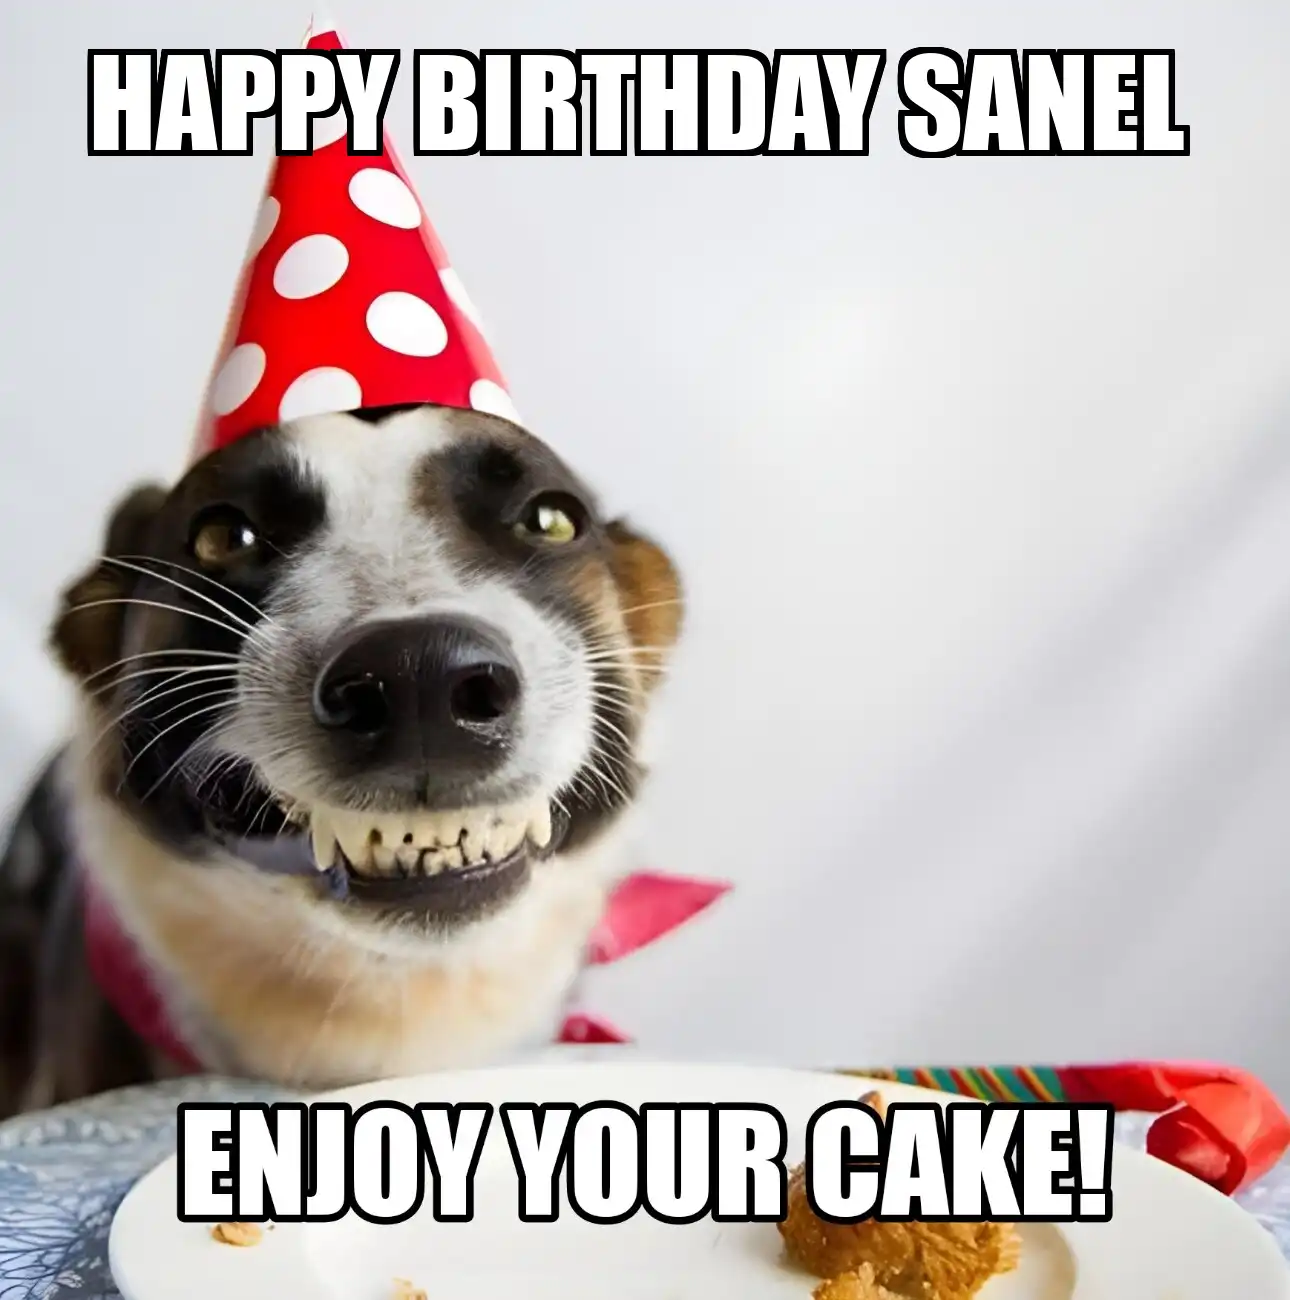 Happy Birthday Sanel Enjoy Your Cake Dog Meme